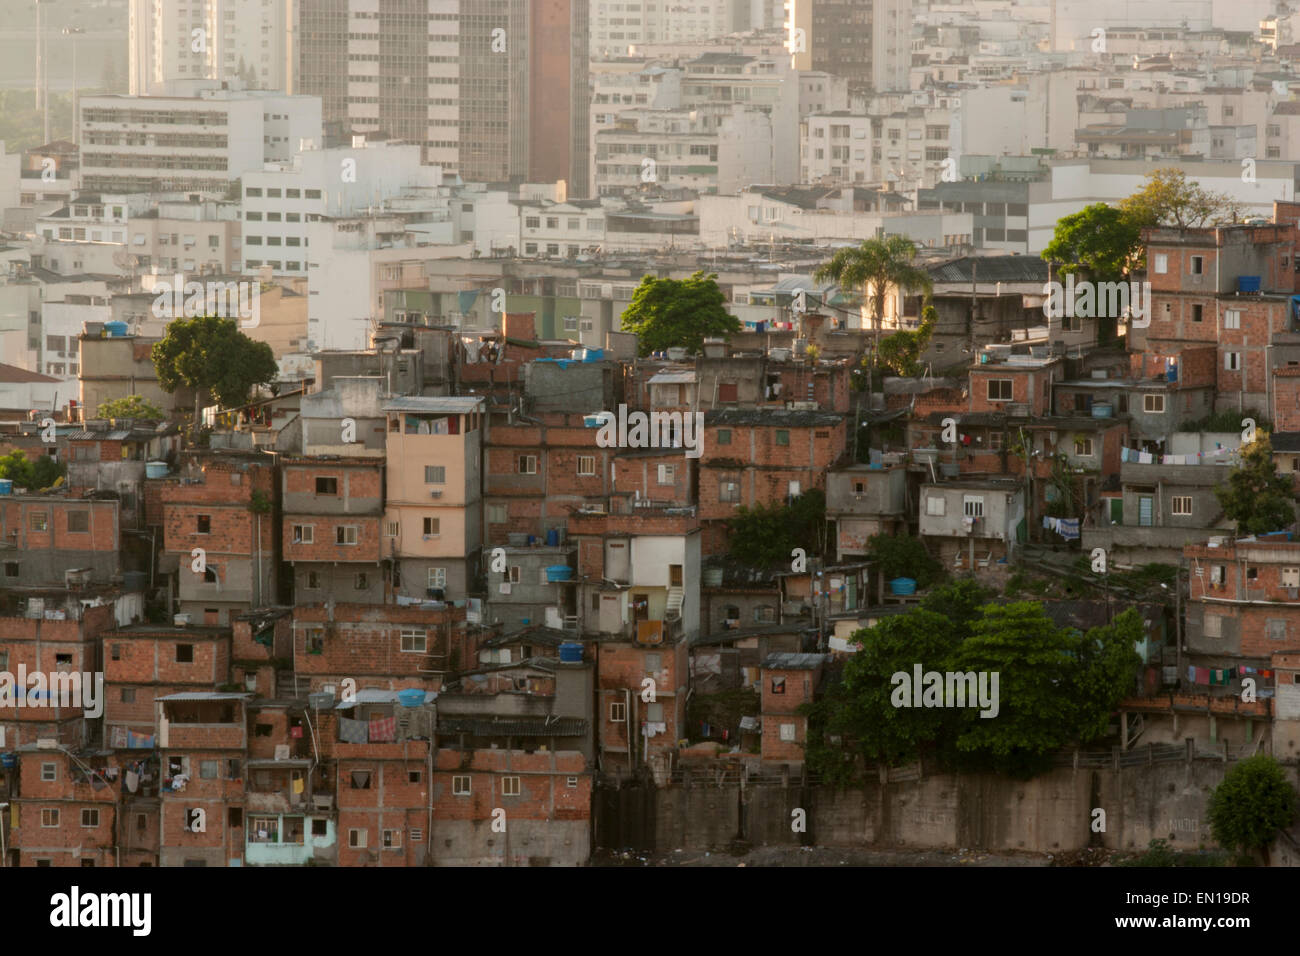 Une communauté de favela slum à Santa Teresa, Rio de Janeiro, Brésil Banque D'Images